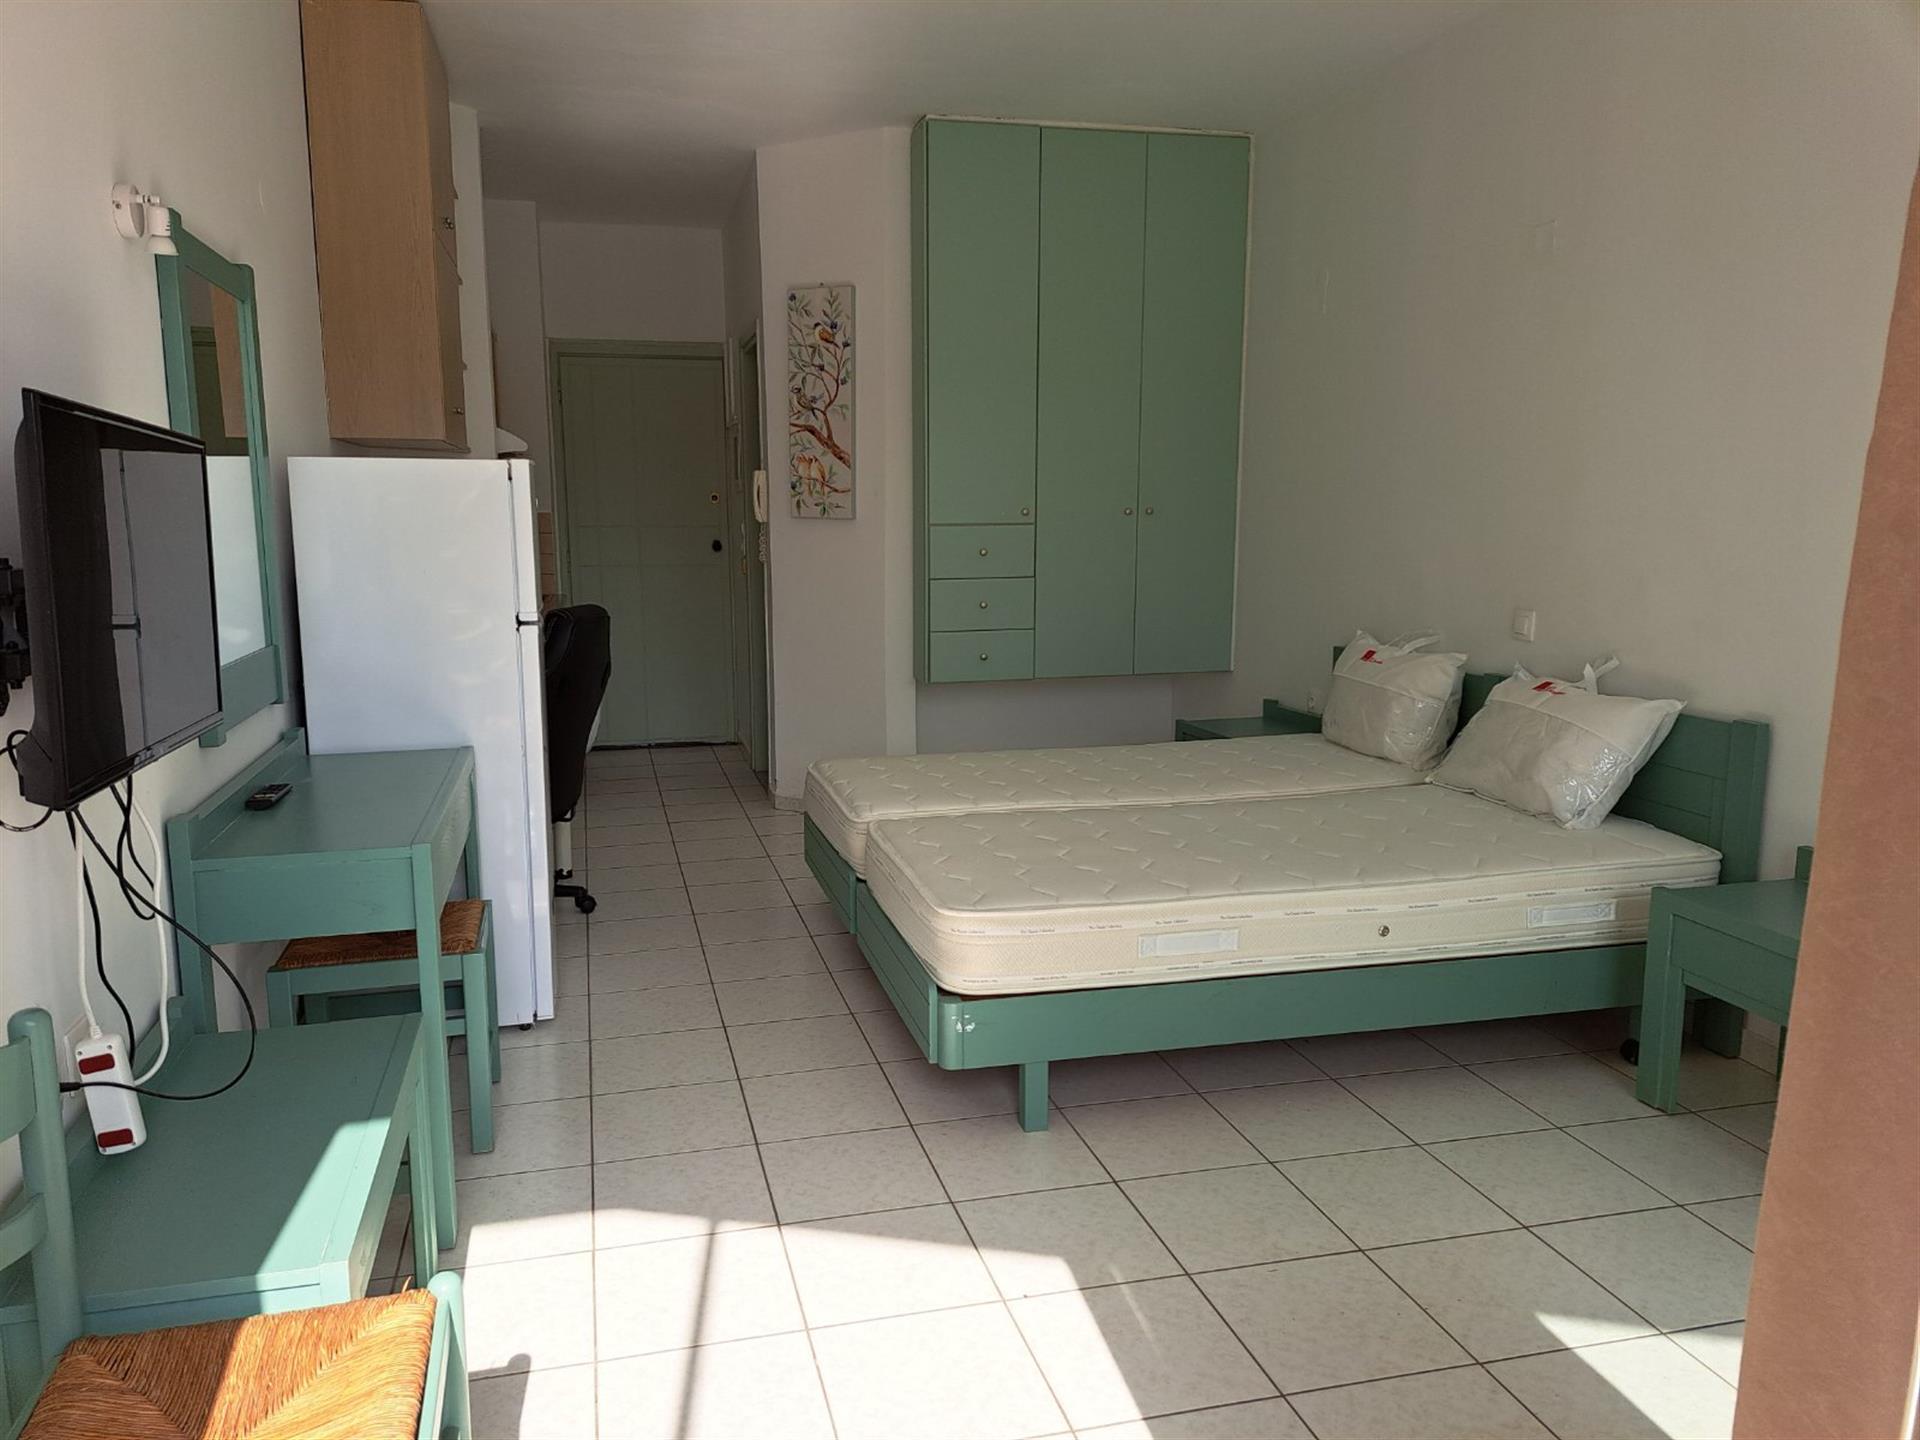 Hauptstrand der Stadt Rethymno - Zwei renovierte Apartments in bester Lage